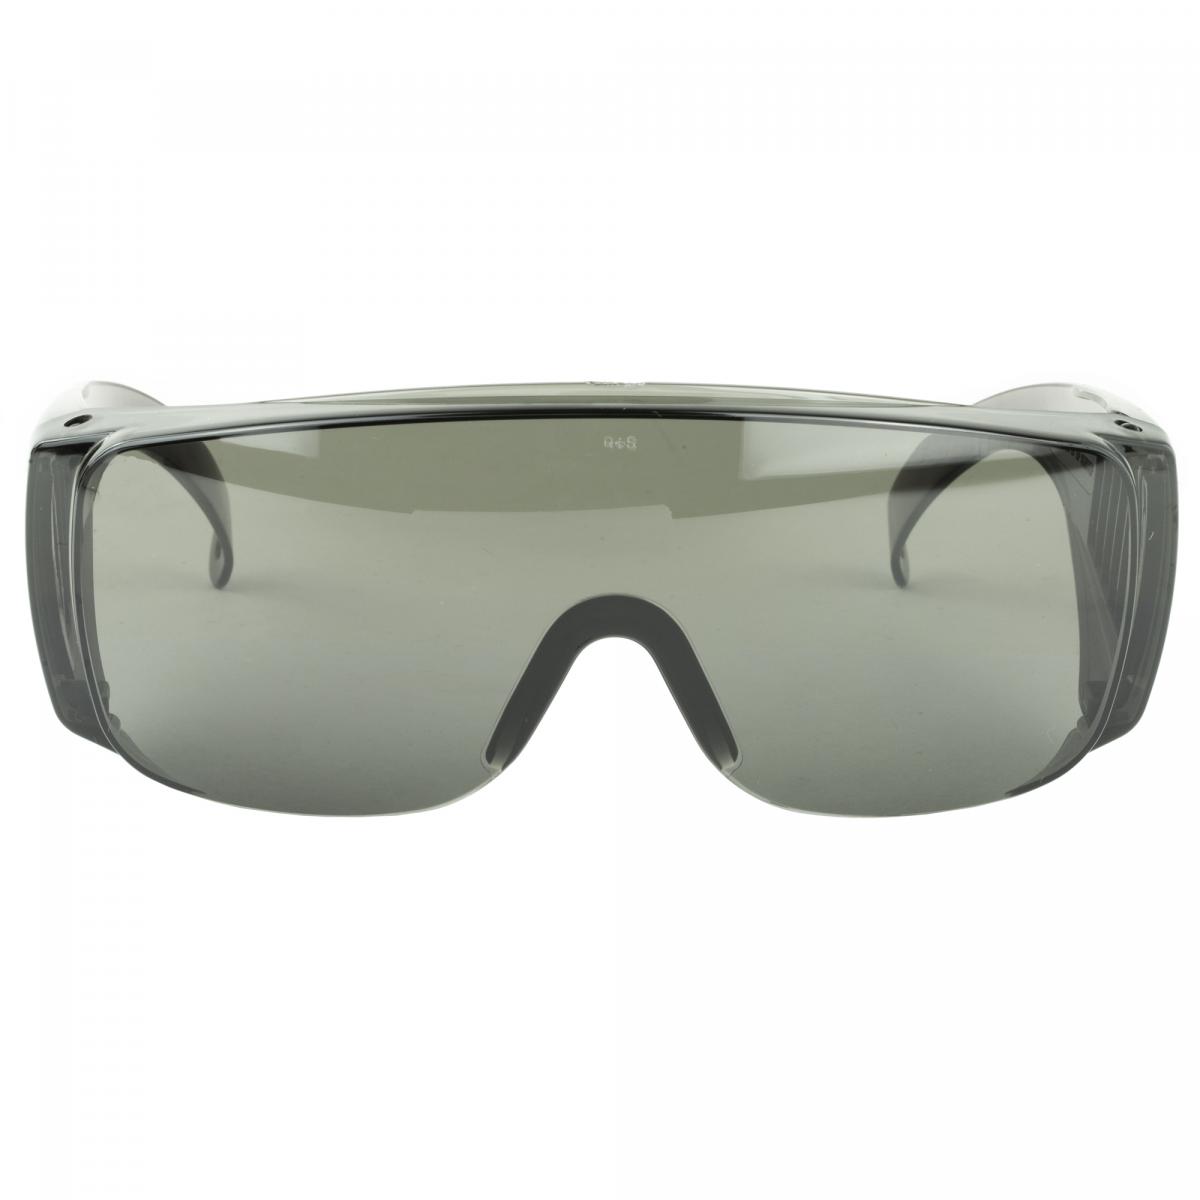 Smoke glass. Защитные очки поверх обычных. Очки CV. Защитные очки Outfitter одеваются поверх корректирующих очков. Setwear Safety Glasses Smoke.